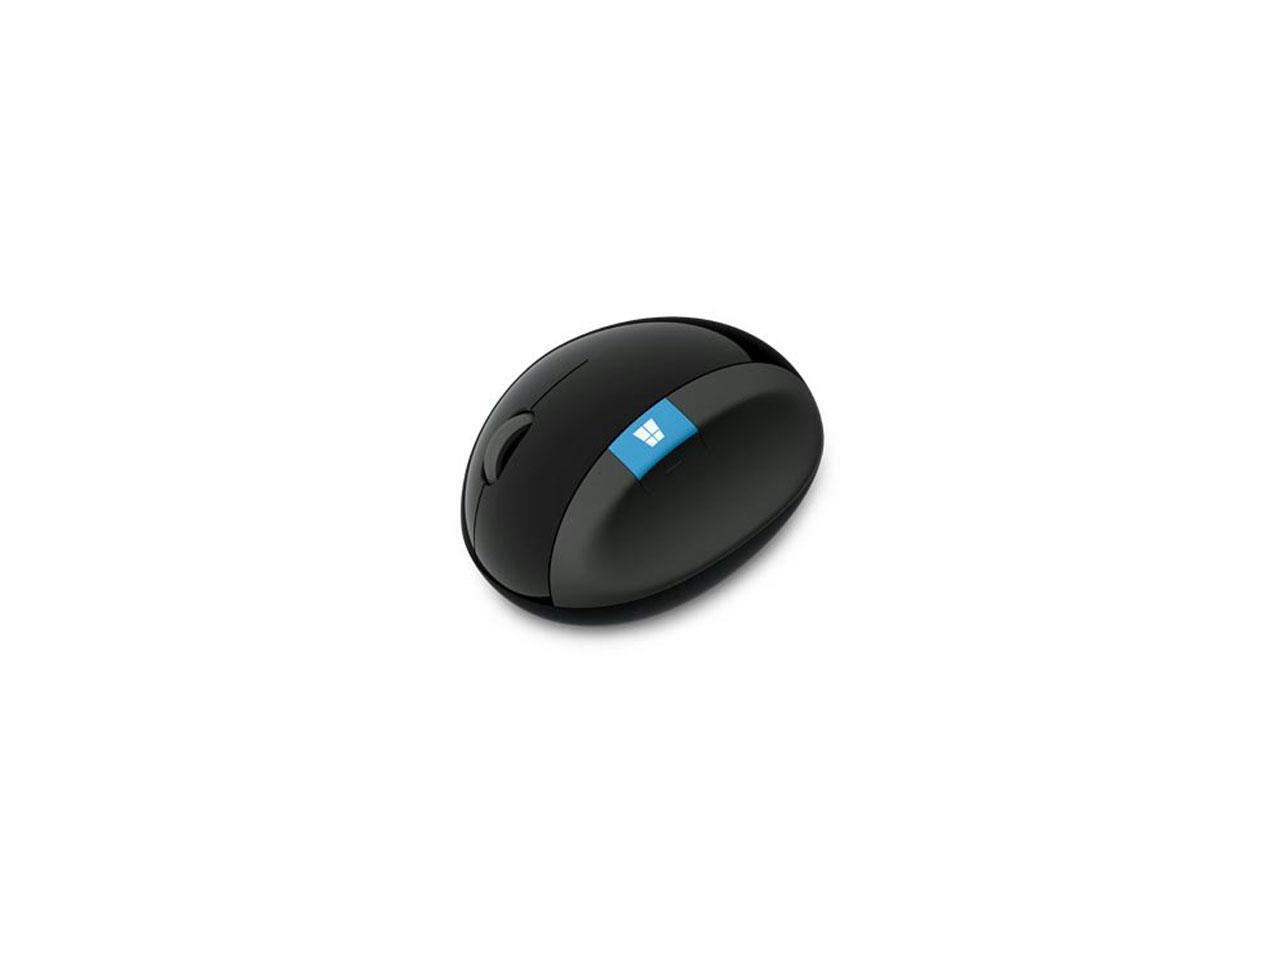 Microsoft Sculpt Ergonomic Mouse for Business - Newegg.com